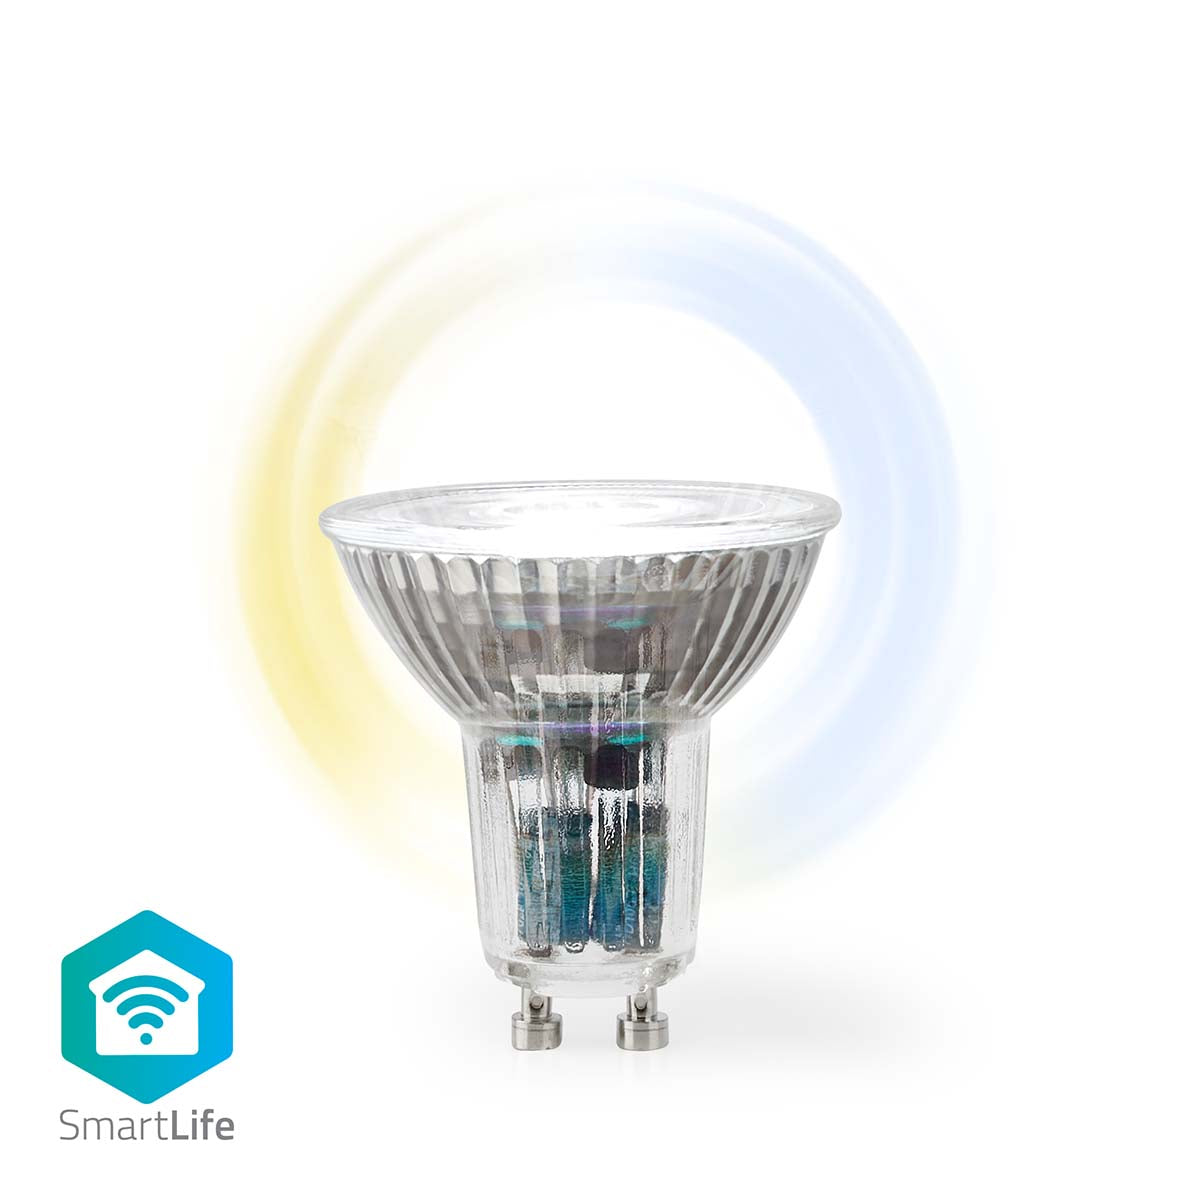 Lâmp. LED Branco Qt e Frio|Wi-Fi|GU10|345 lm|4.9 W|PAR16